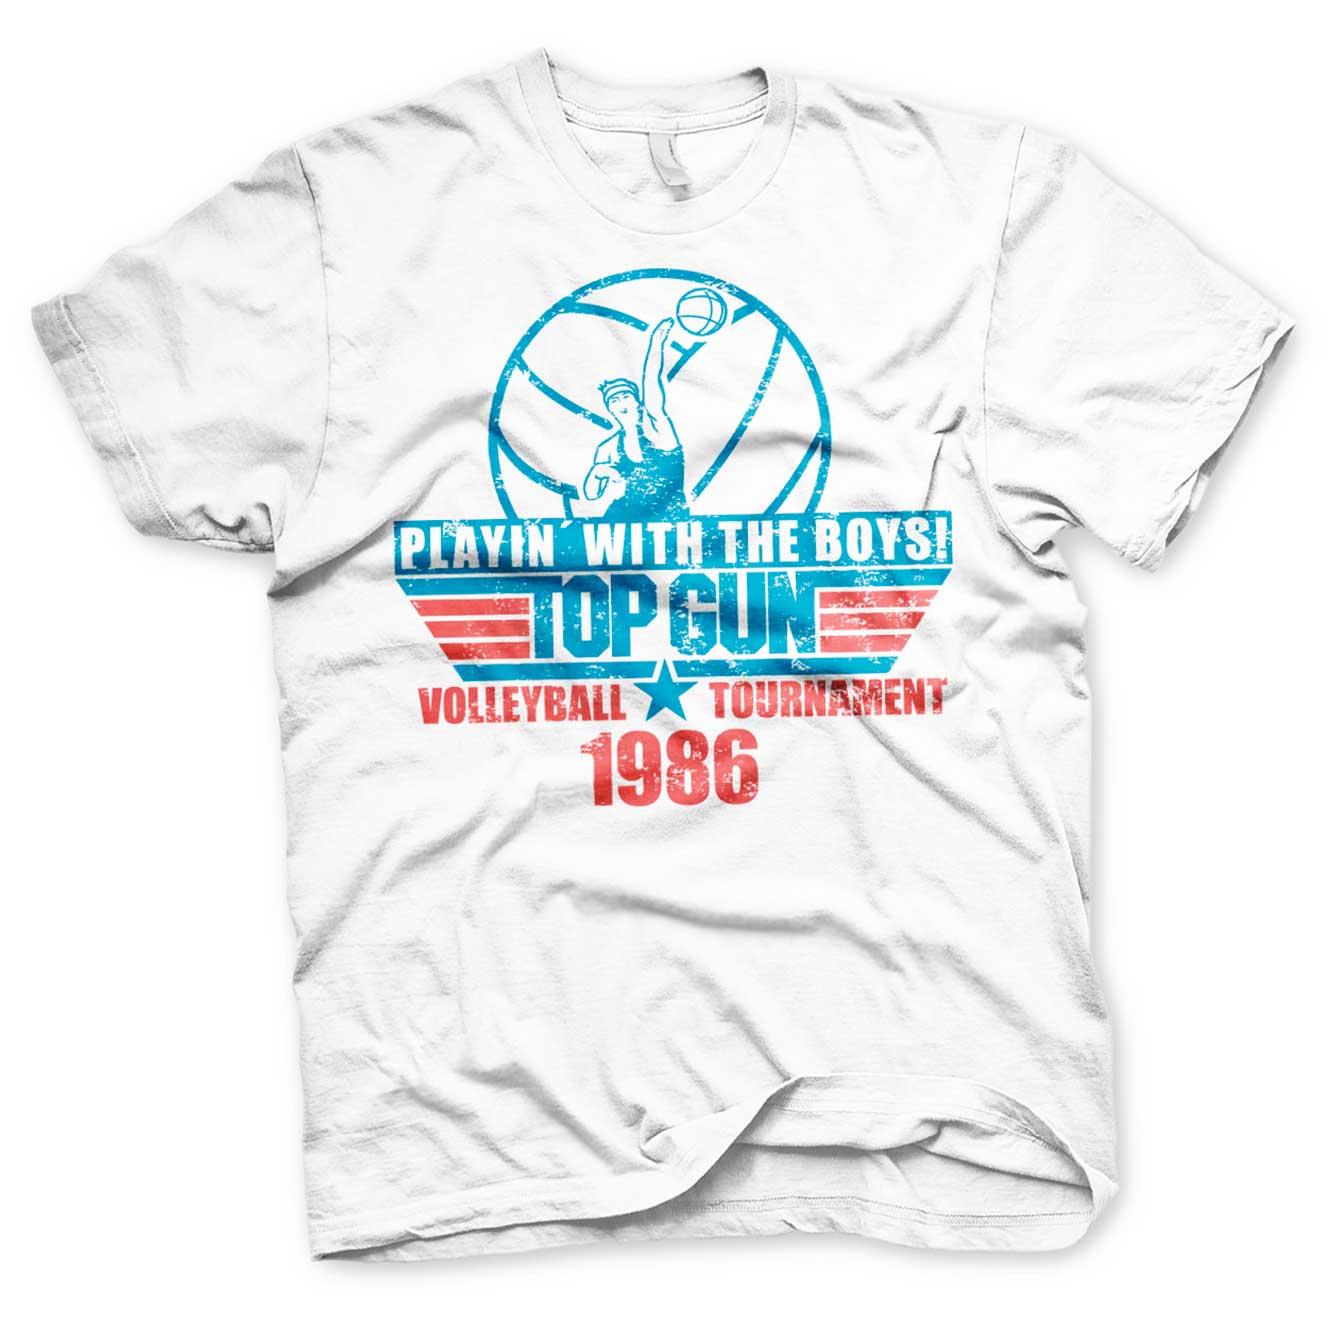 top-gun-volleyball-tournament-t-shirt